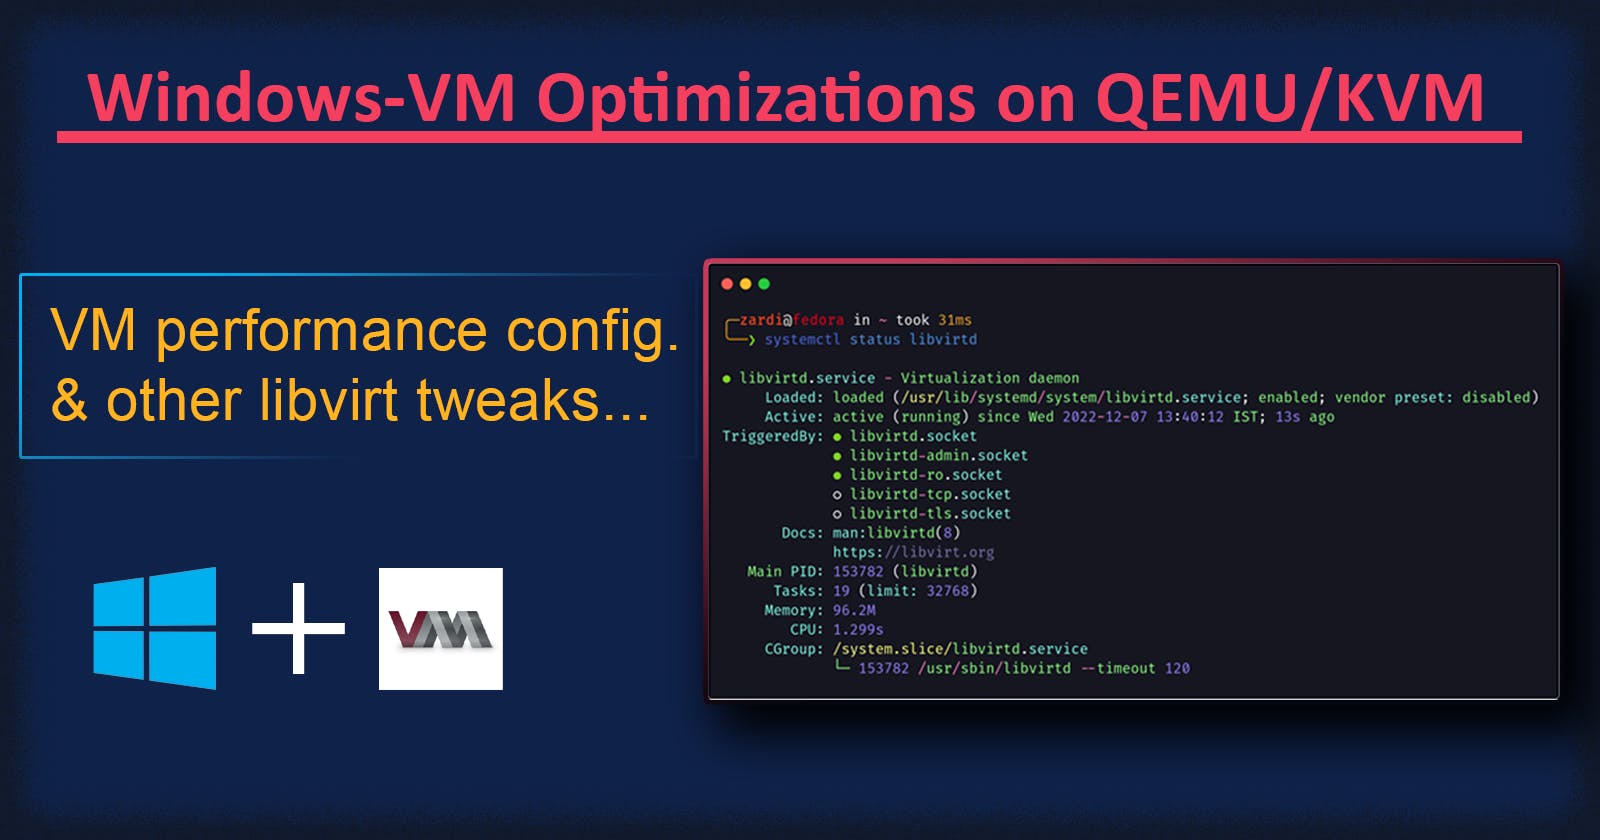 Optimizing Windows-VM performance on QEMU/KVM